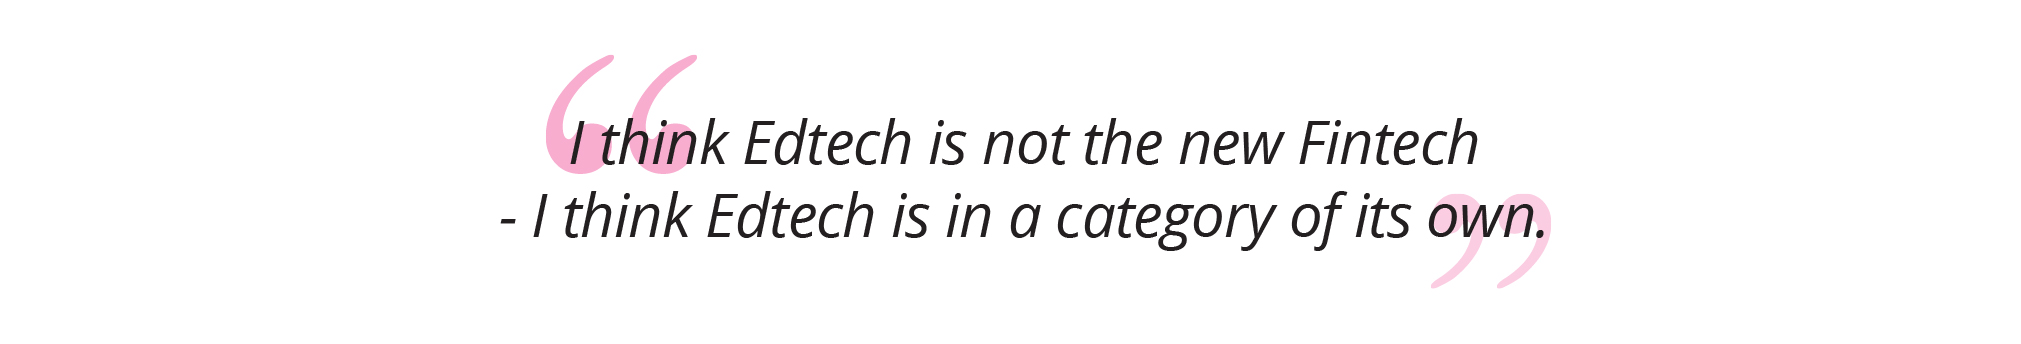 edtech is not the new fintech